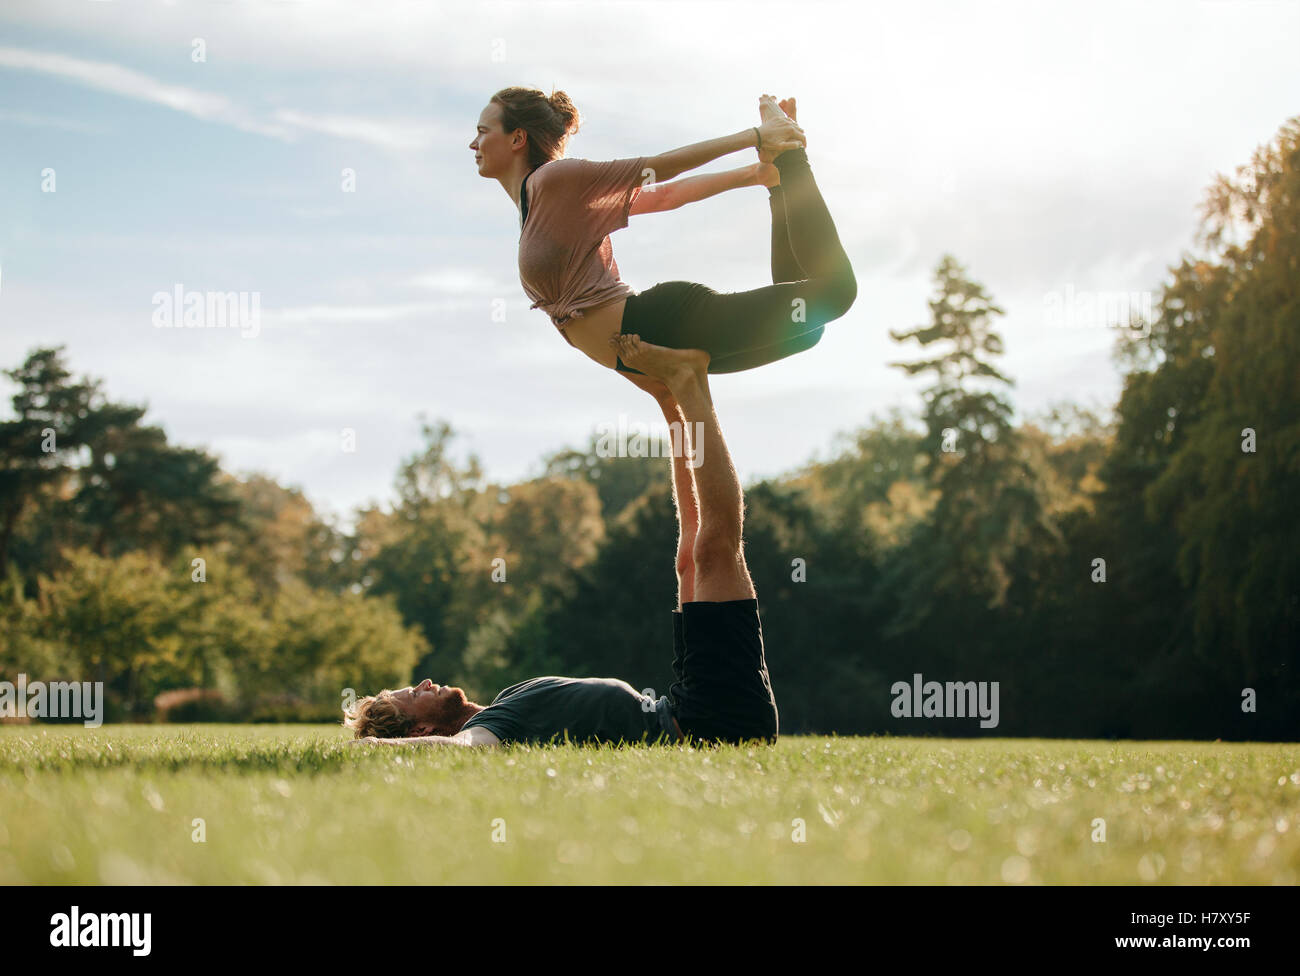 Colocar pareja joven haciendo acro yoga. Hombre tumbado sobre el césped y equilibrar la mujer en sus pies. Equilibrio acrobático en el parque. Foto de stock